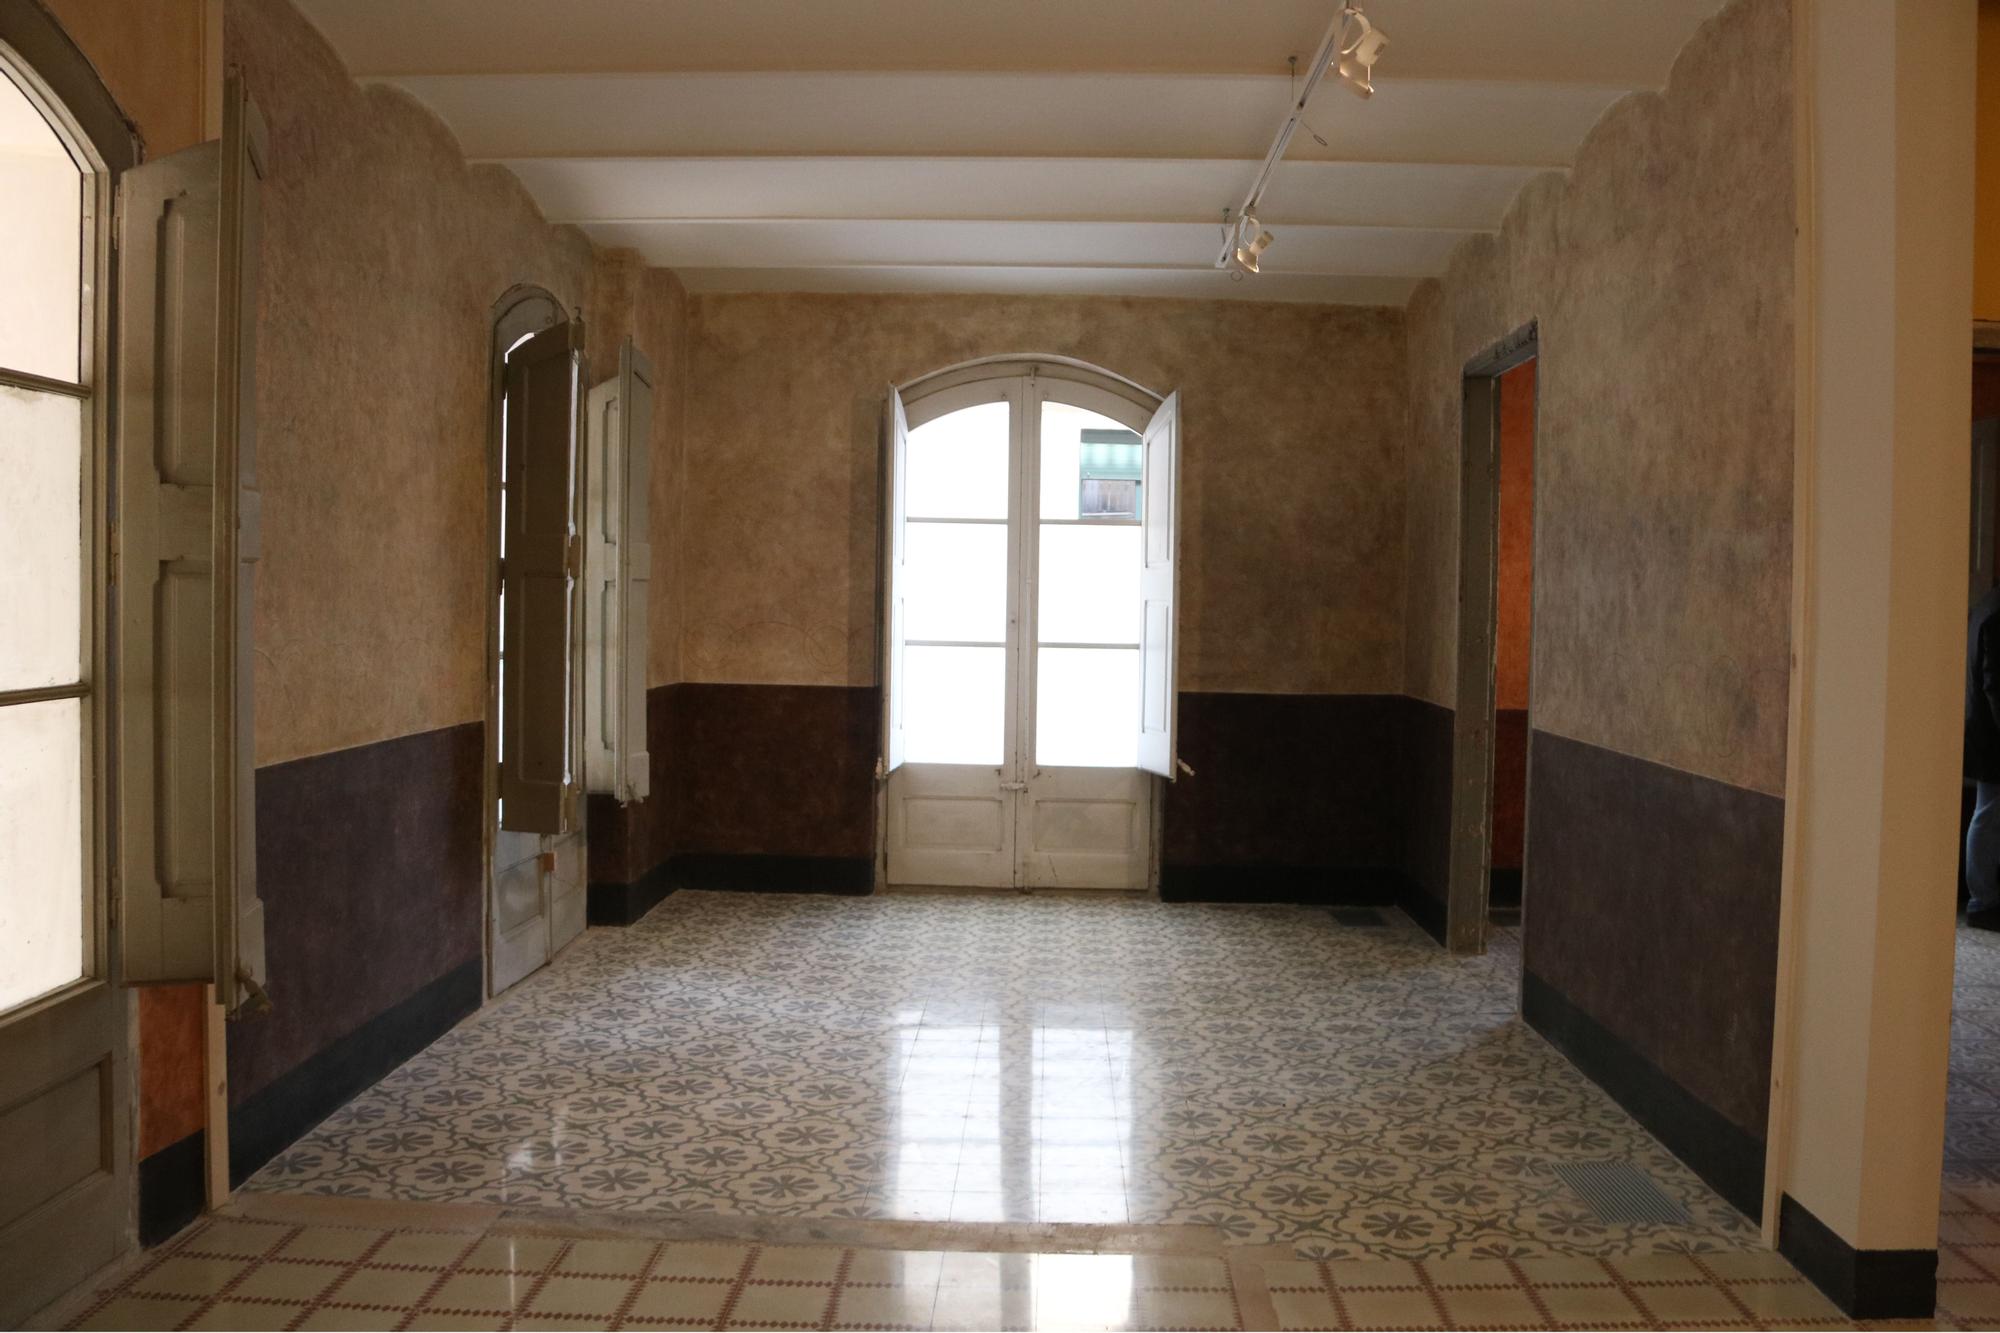 La sala principal del pis on va nèixer Dalí.